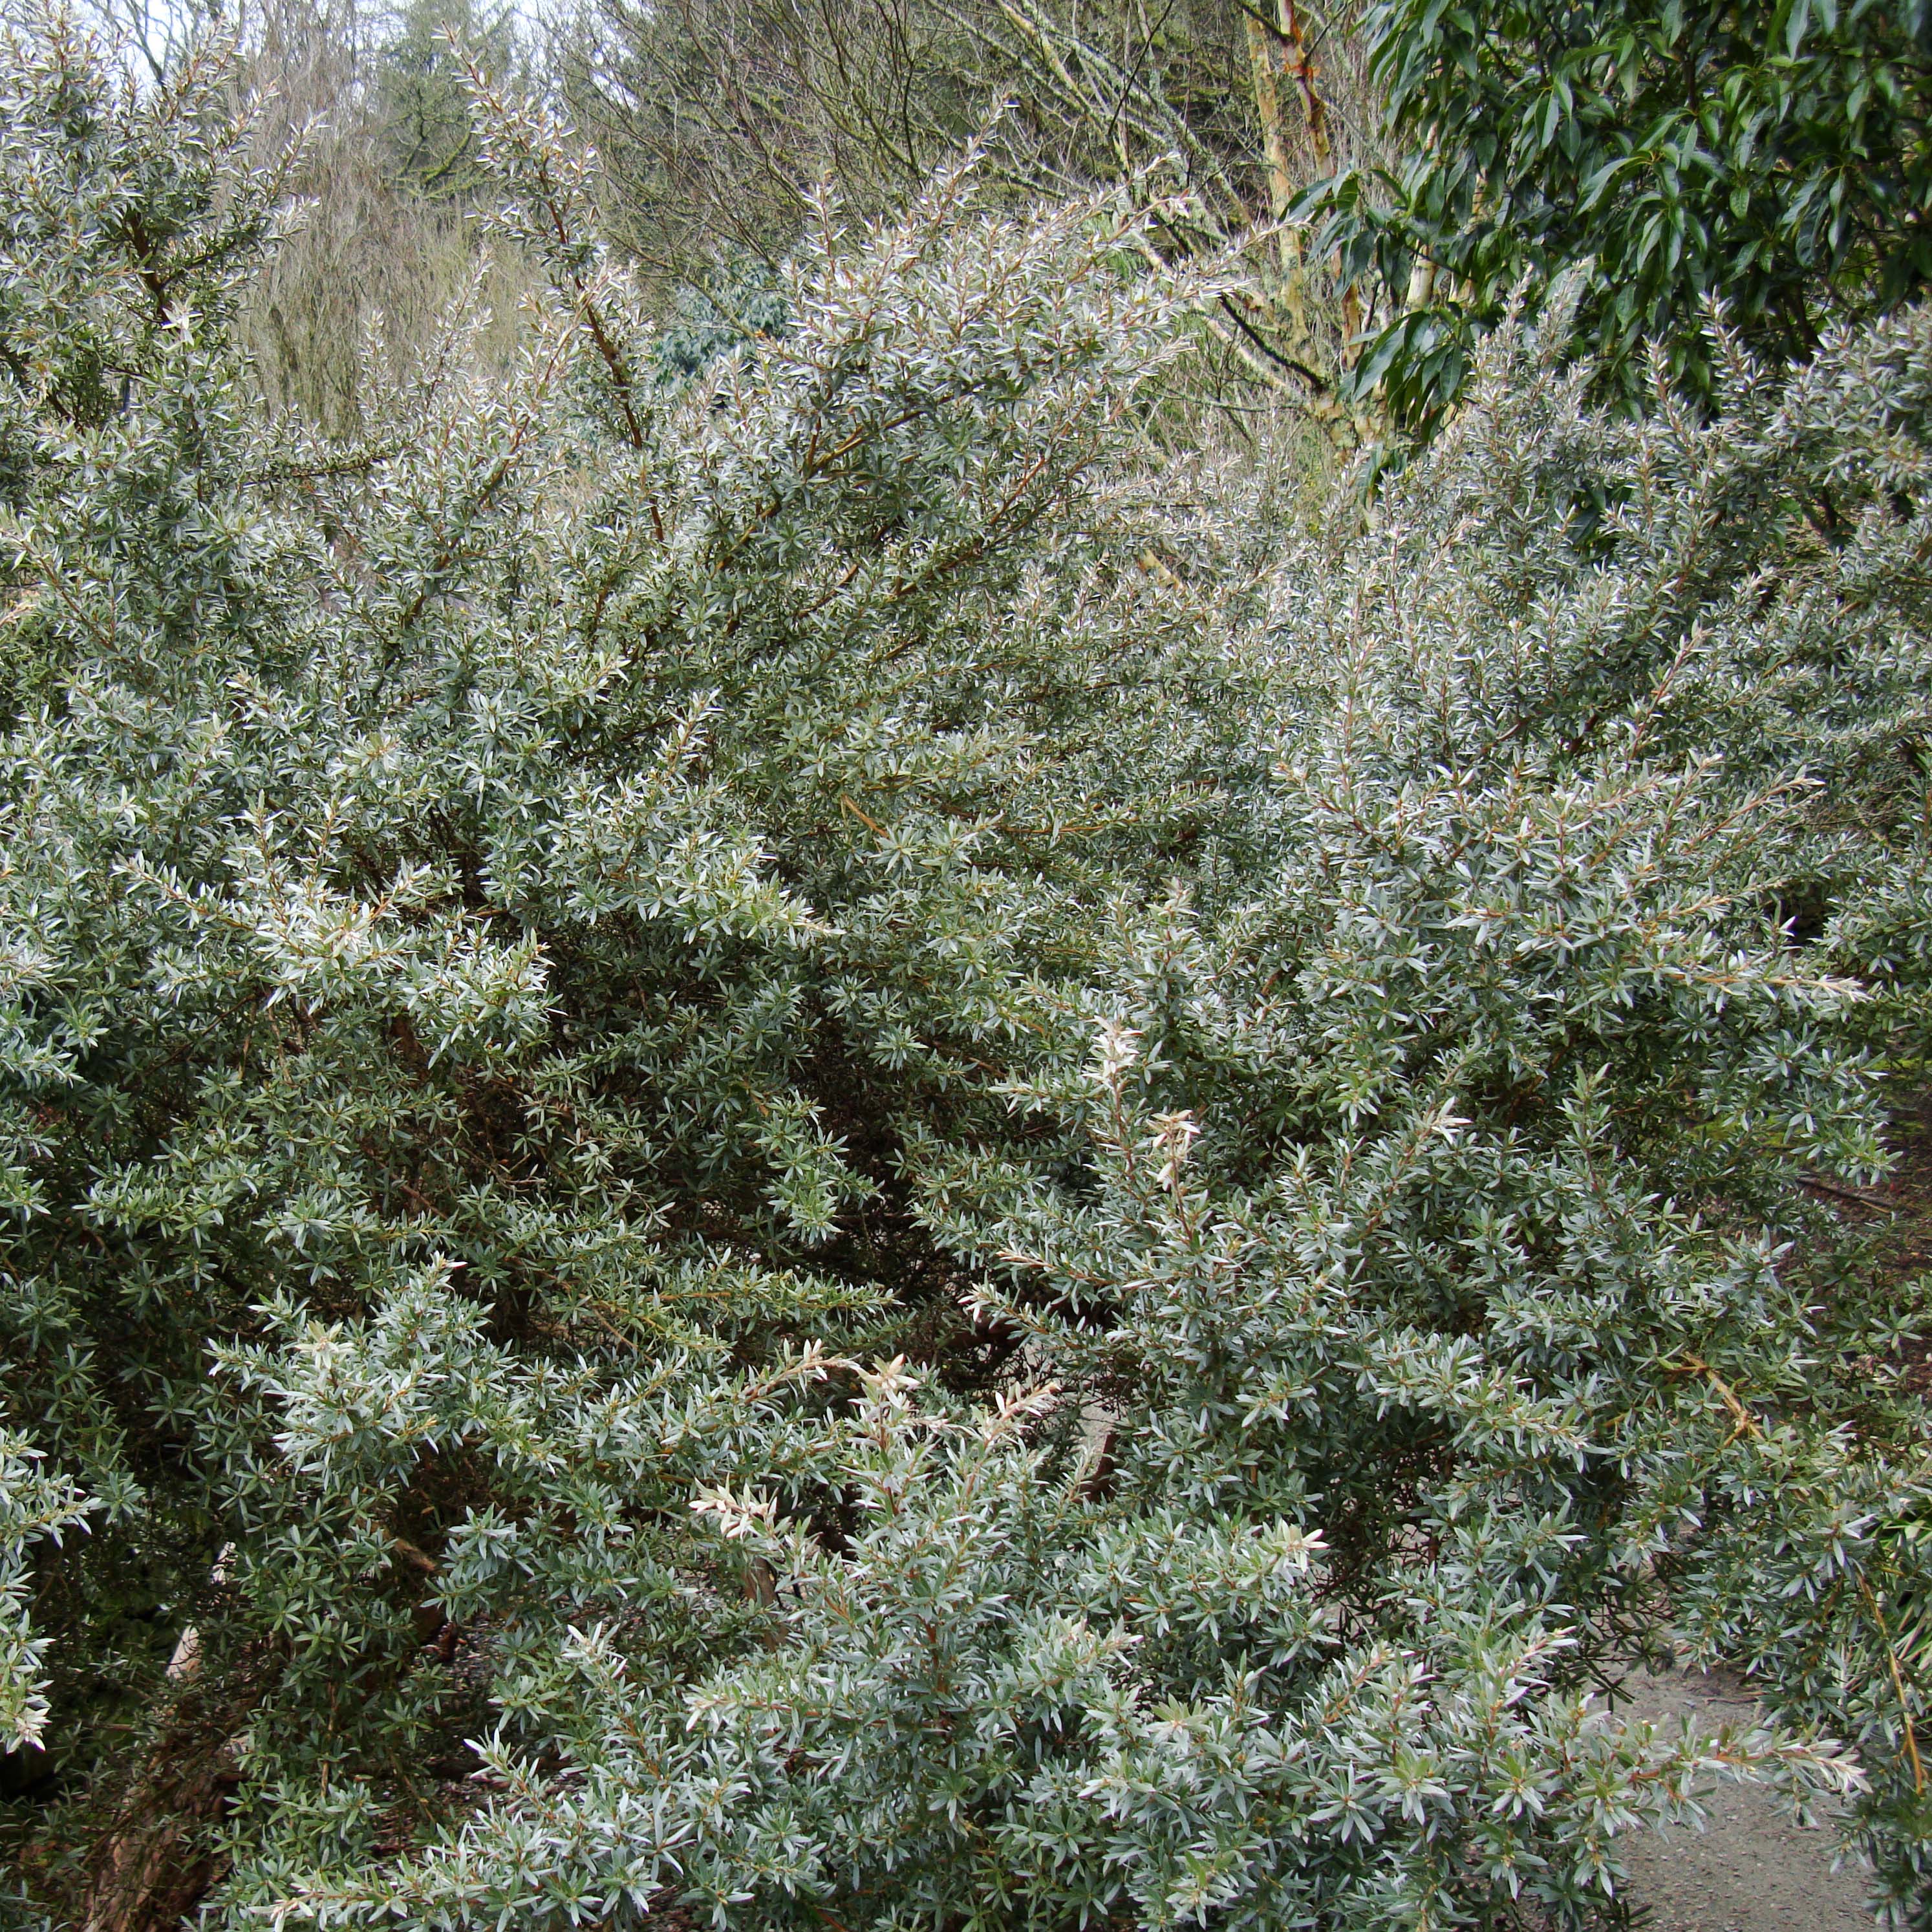 Leptospermum Silver Sheen - Arbre à thé laineux